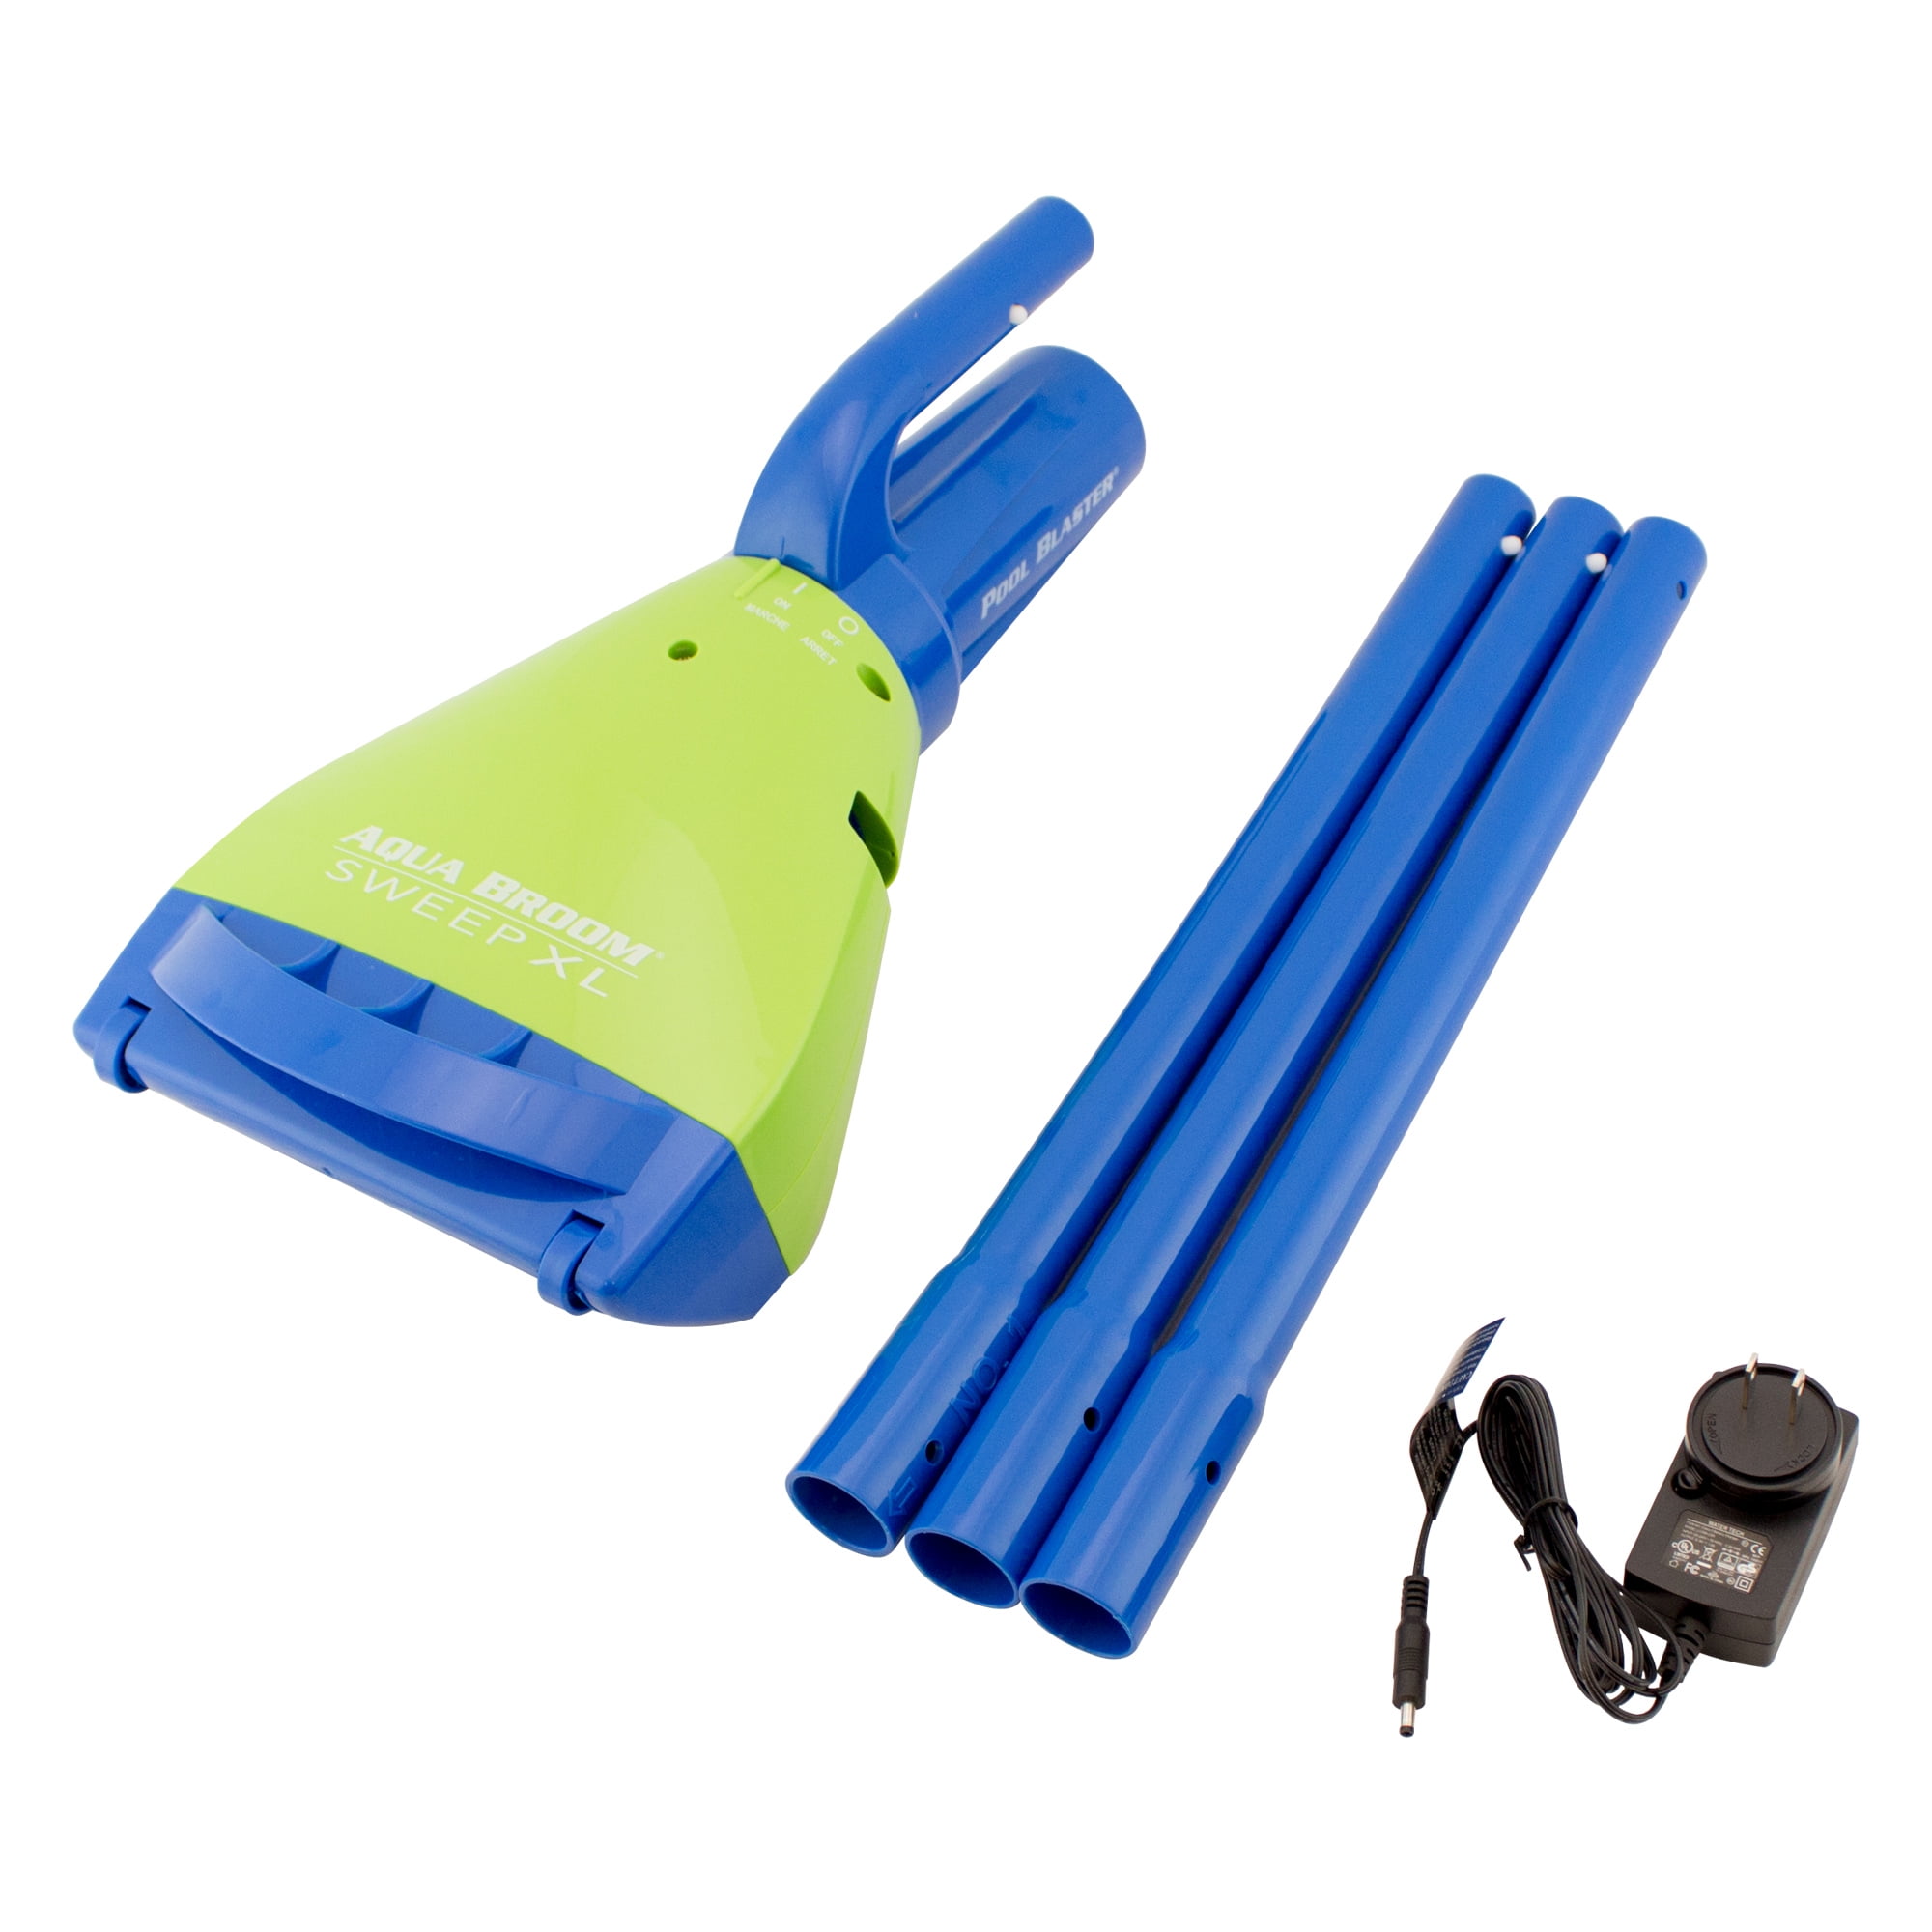 Eziclean Broom ® Cycloboost R610 Flex Vacuum Cleaner Blue